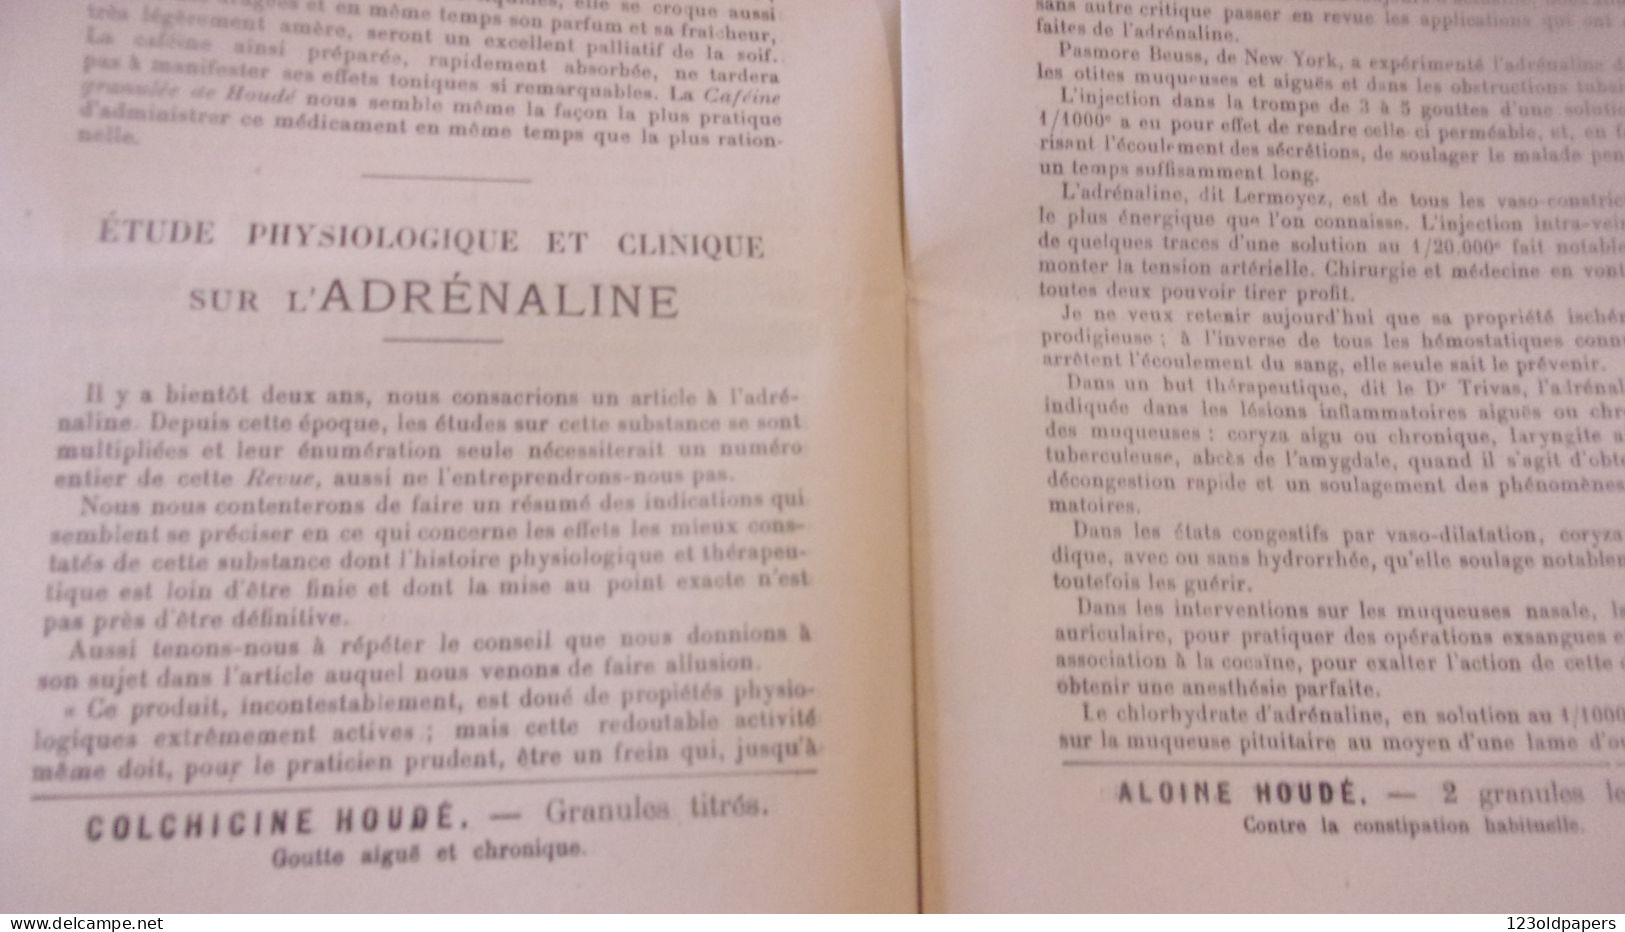 RARE CATALOGUE  A HOUDE ALCALOIDES ETUDES PRINCIPES ACTIF RETIRES DU REGNE VEGETAL / CAFEINE ADRENALINE .. - 1900 – 1949